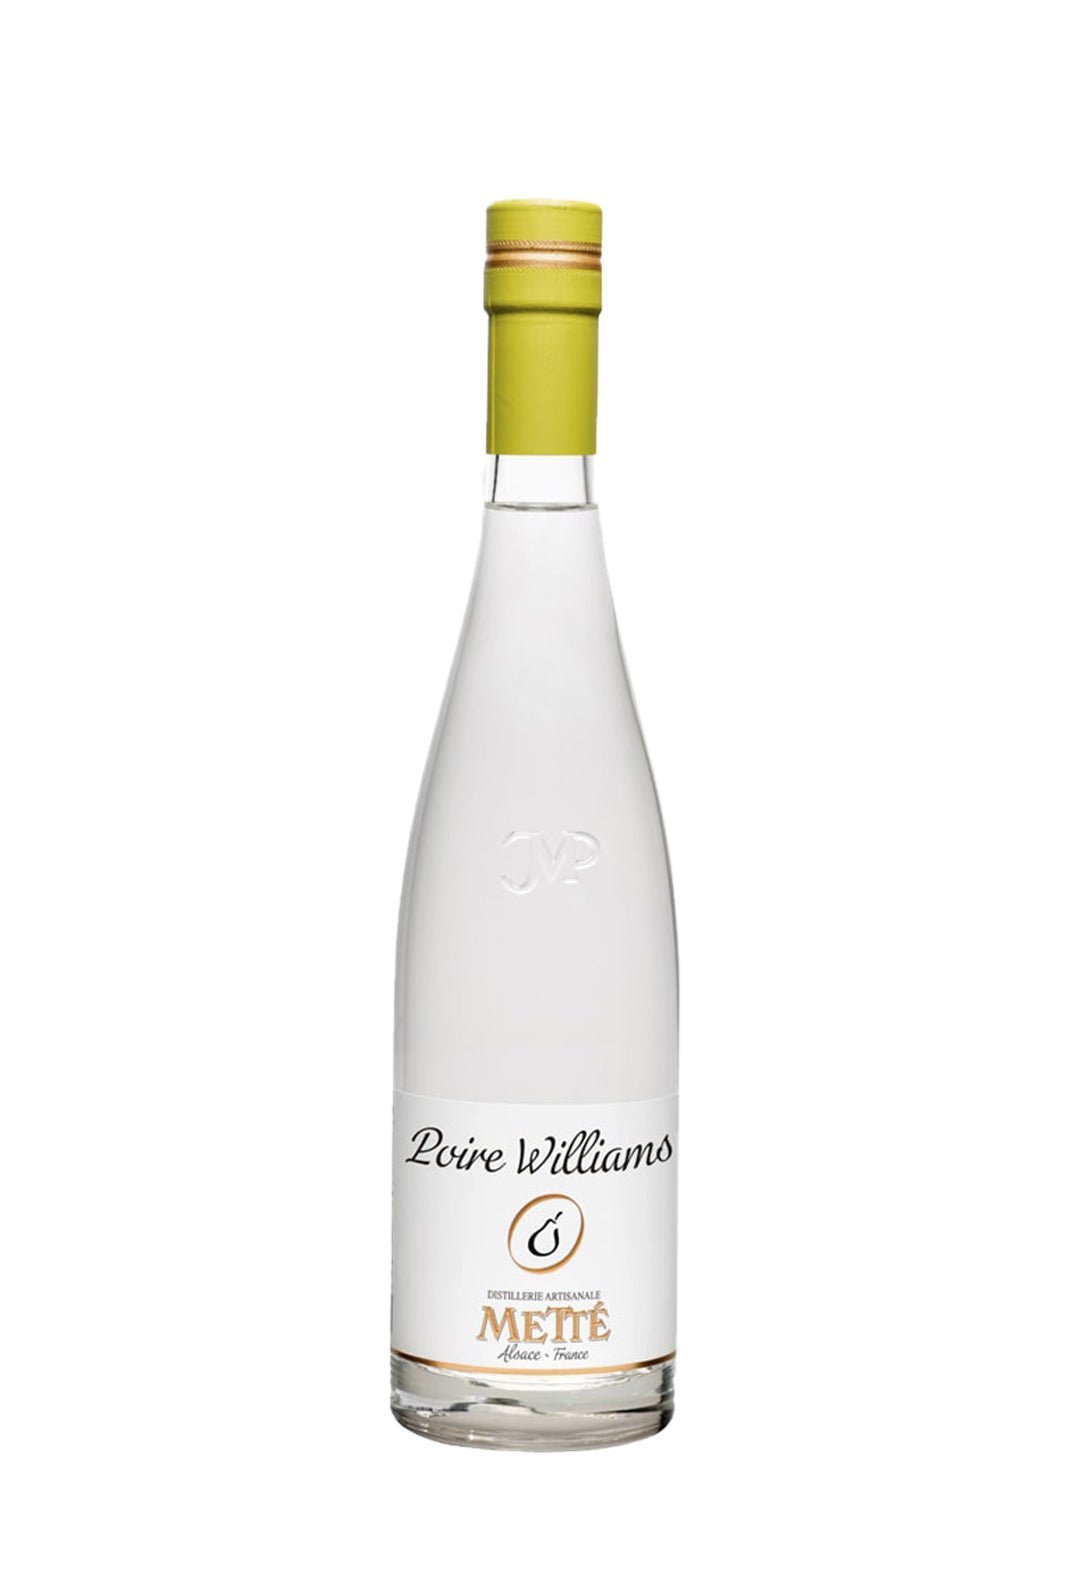 Mette Williams Pear Eau de Vie Fruit Spirit 42% 500ml | Eau de Vie | Shop online at Spirits of France